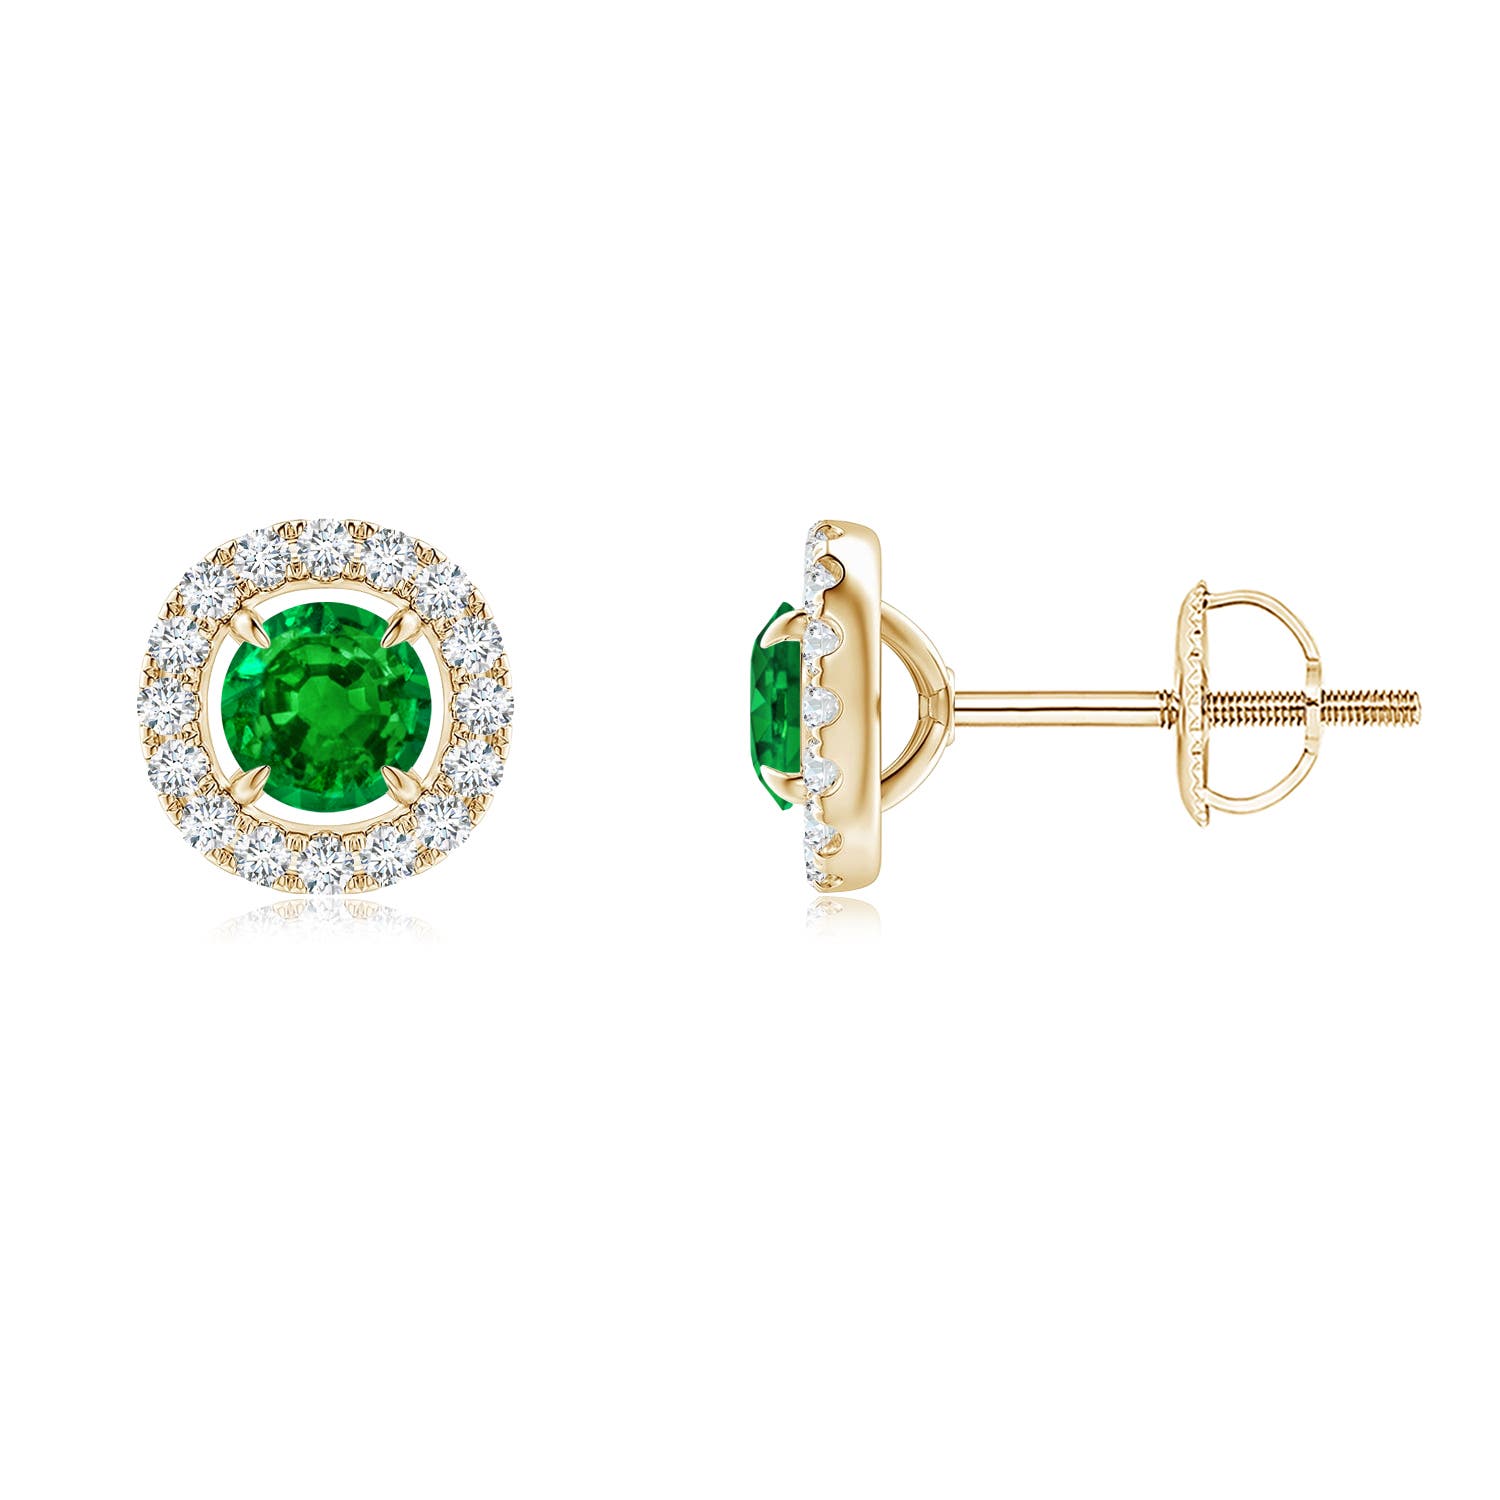 Vintage Style Emerald and Diamond Halo Stud Earrings | Angara